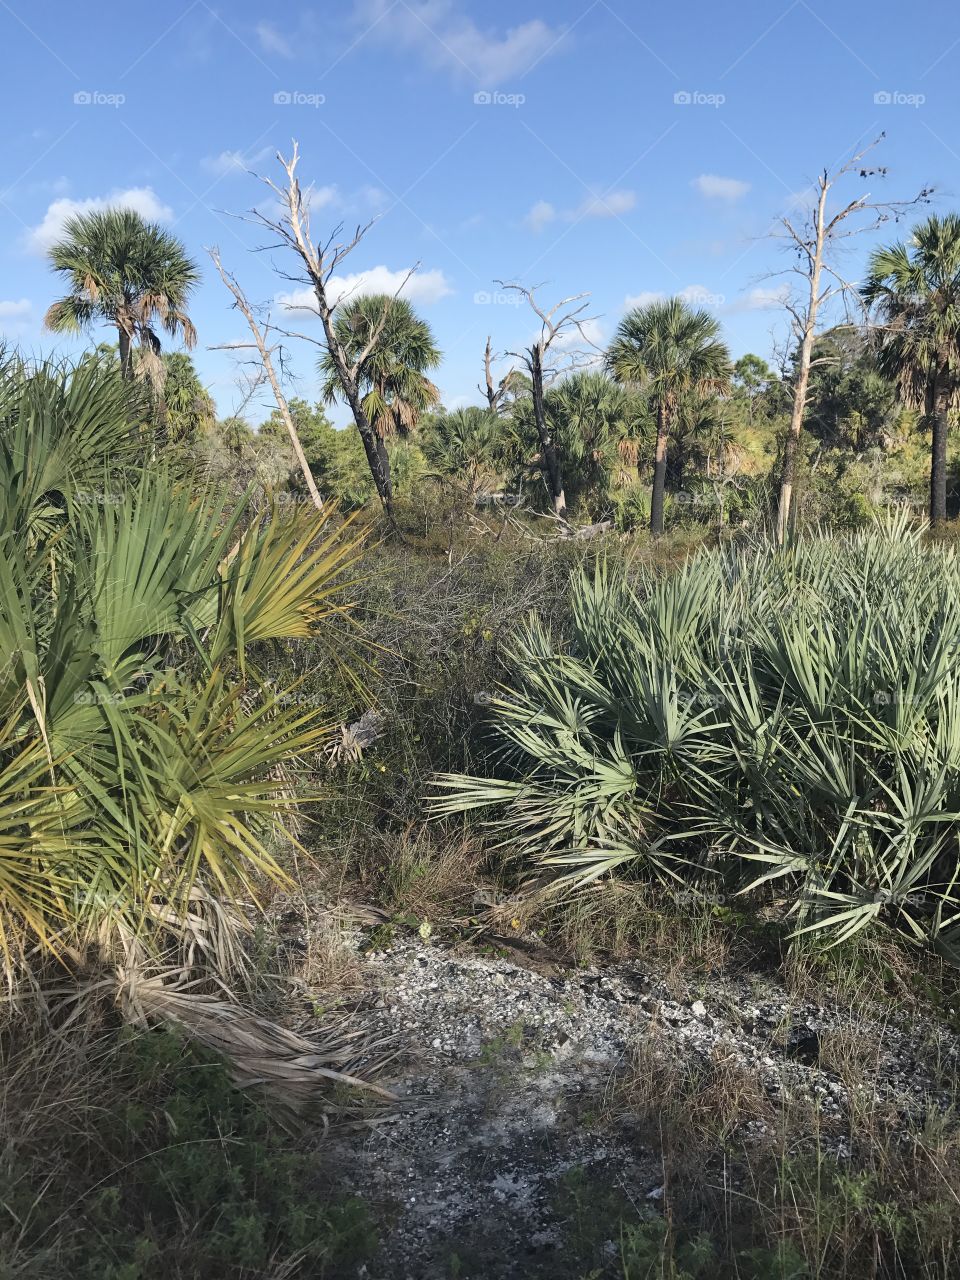 Natural Florida